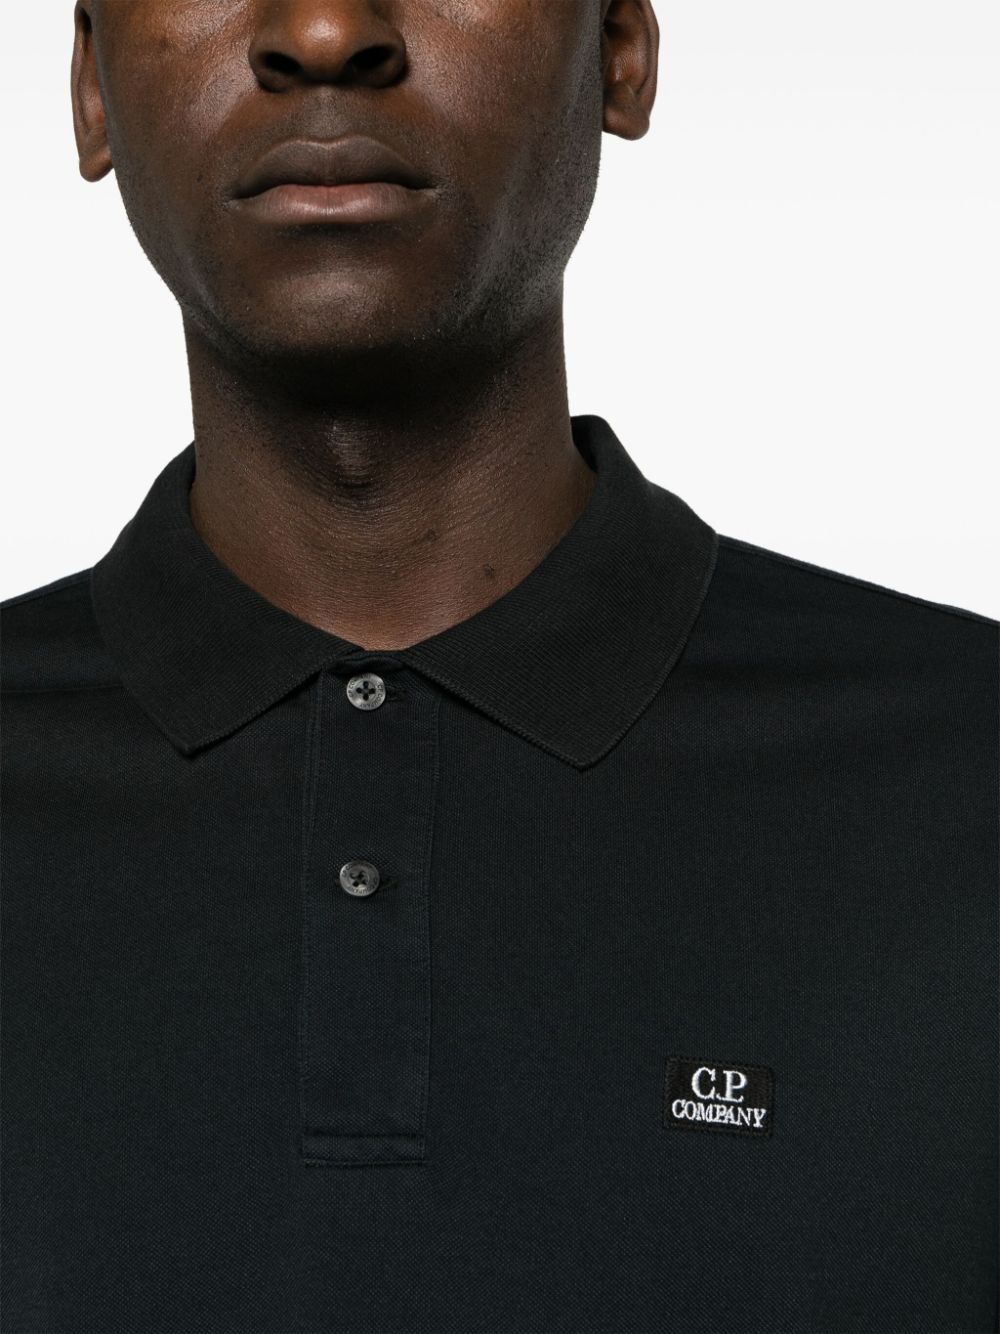 C.P Company - Polo black en piqué à patch logo - Lothaire